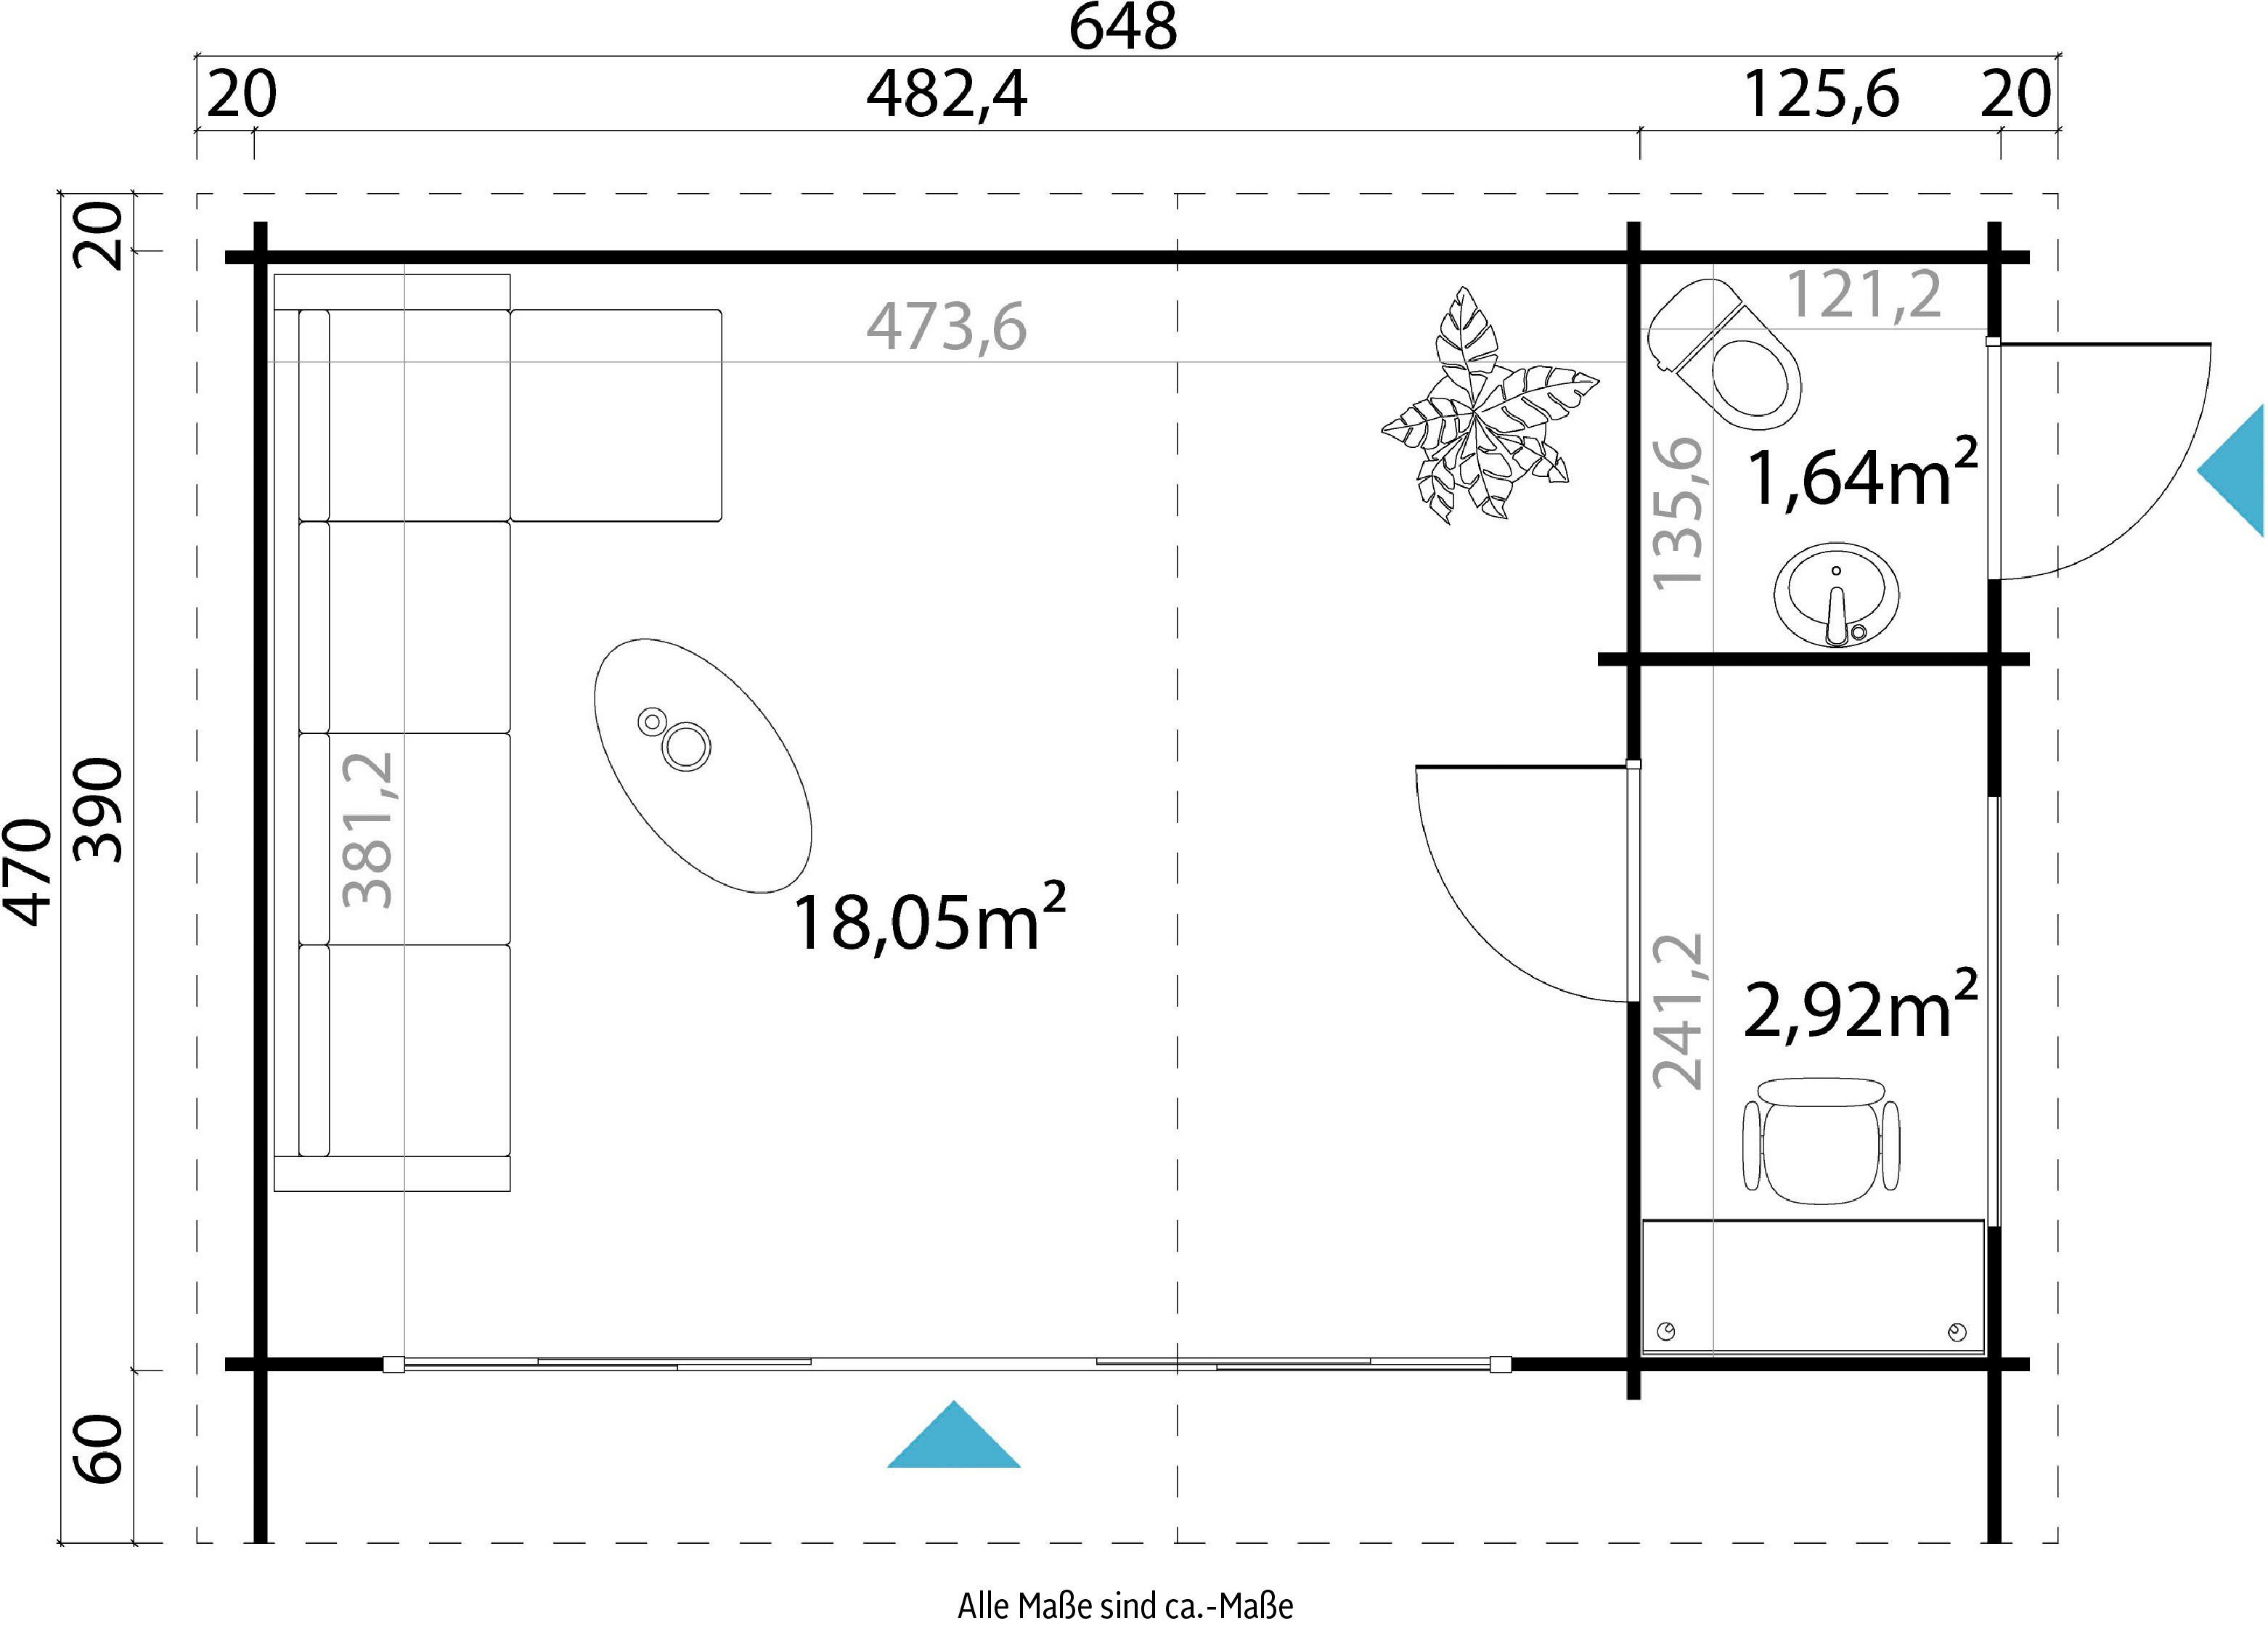 BxT: Gartenhaus carbongrau MAJA cm, 648x470 inkl. verlegen) LASITA JAVA, Fussbodenbretter (Set, zum